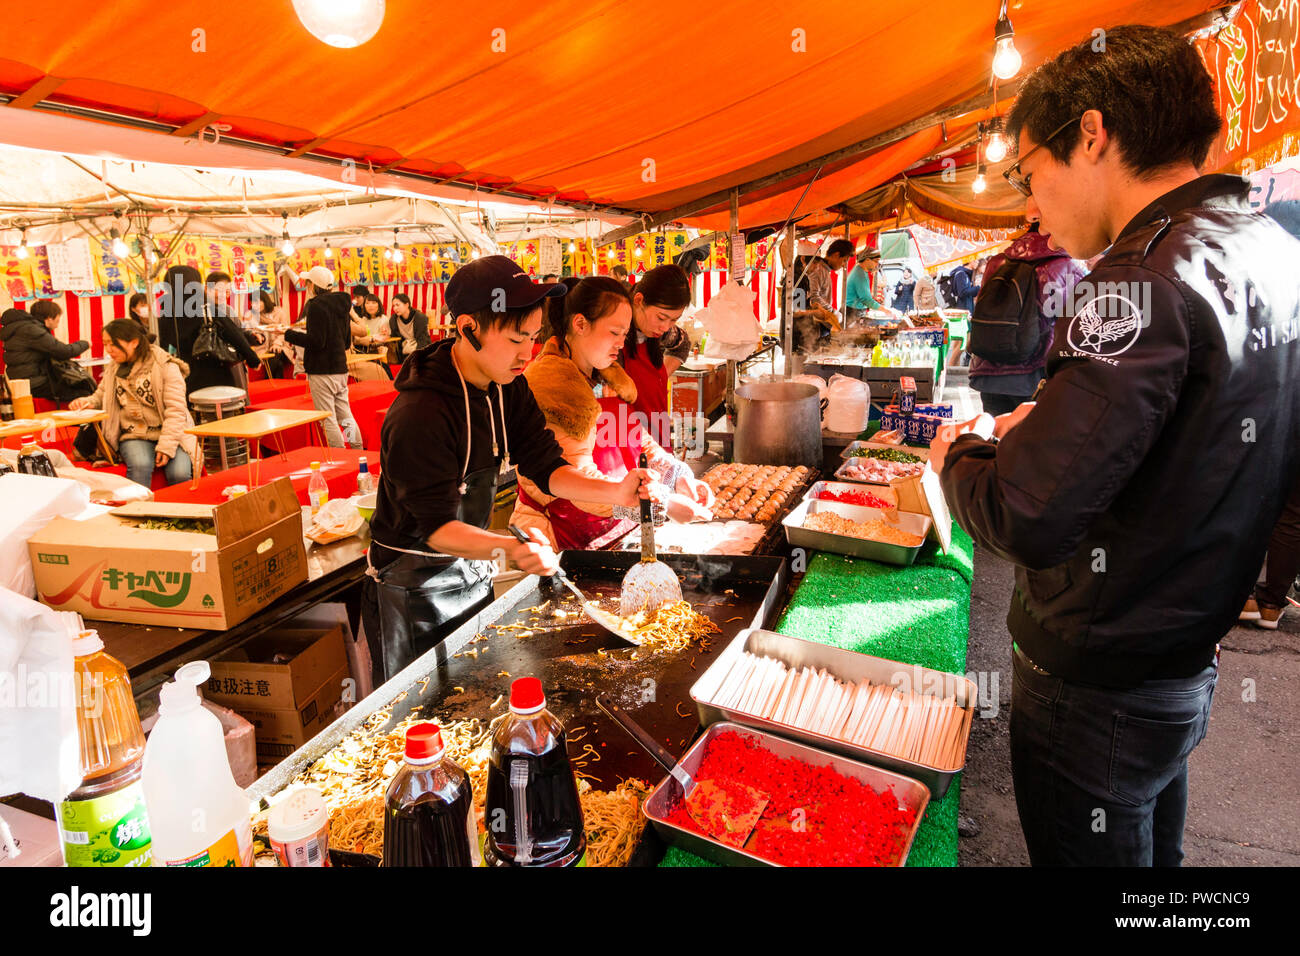 Japanische junge mand und zwei junge Frauen, bei Yakisoba takeaway Kochen gebratene Buchweizennudeln auf Warmhalteplatte während des Festivals. Kunde wartet. Stockfoto